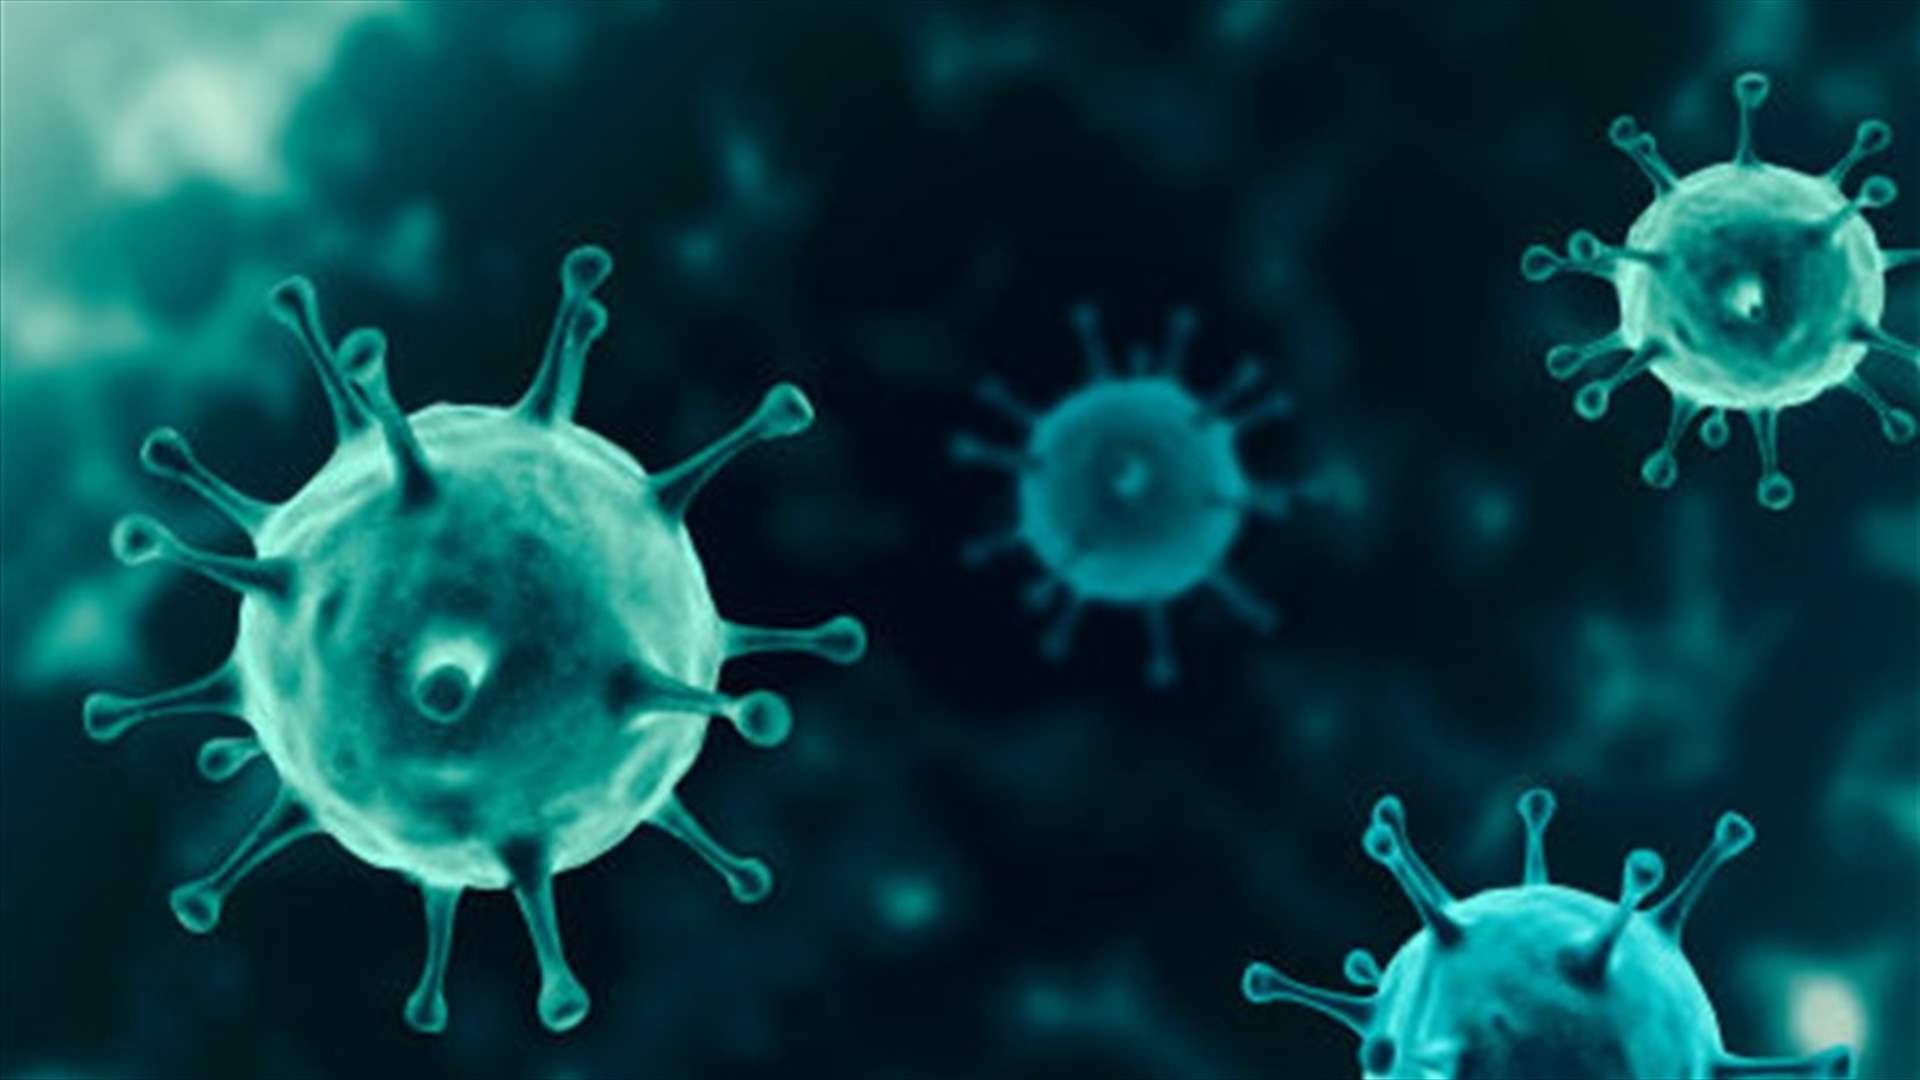 The daily report on coronavirus in Lebanon